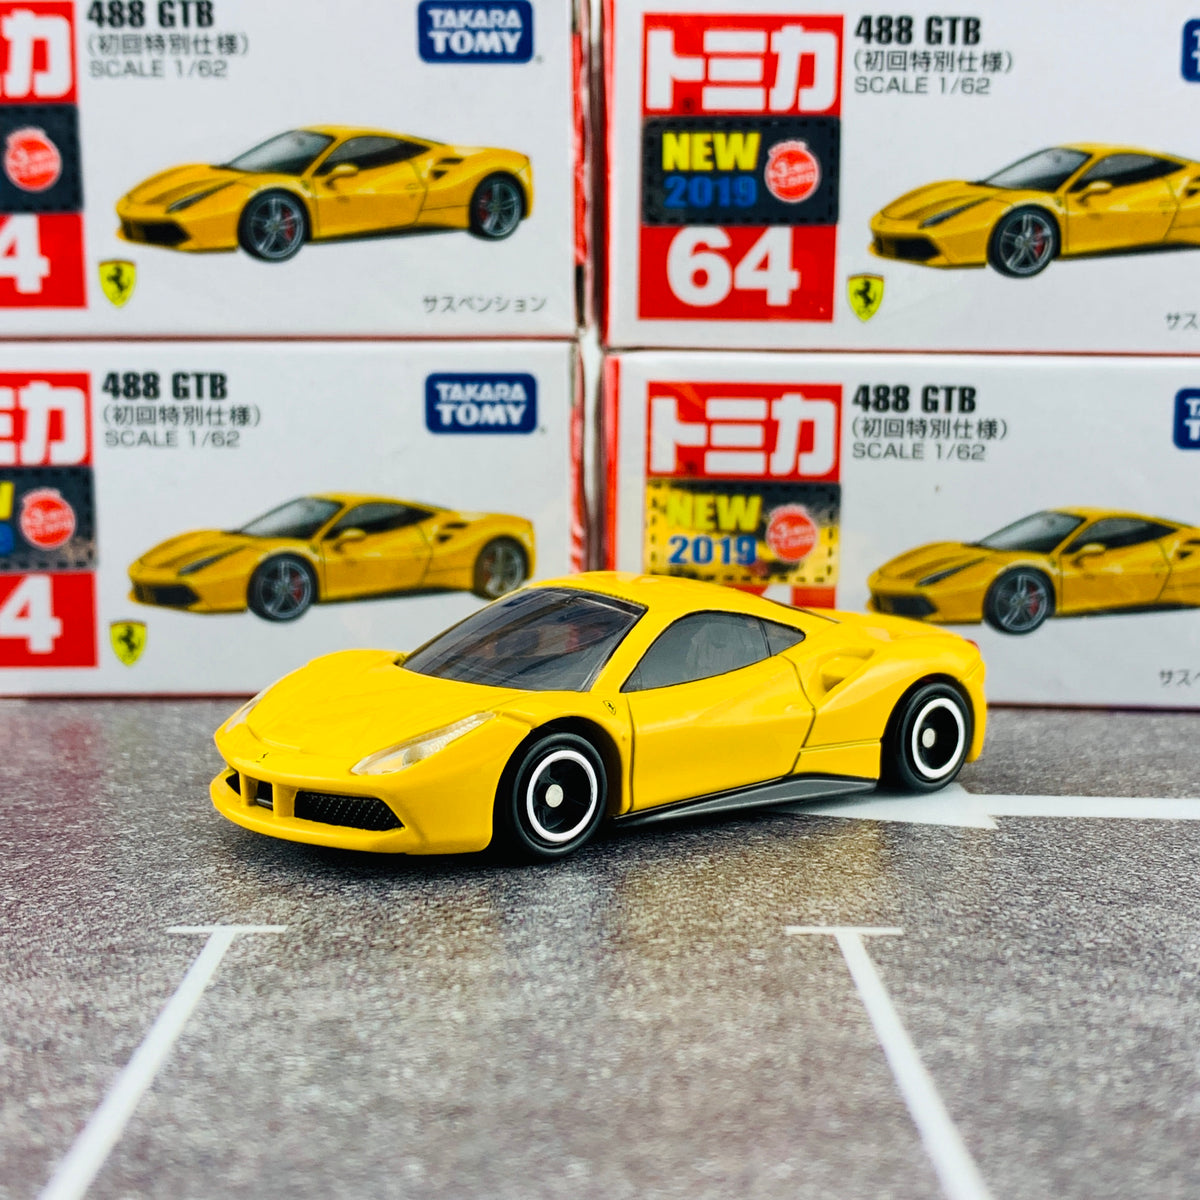 【展示特価】トミカ 64 Ferrari 488 GTB (初回特別仕様) 限定品 1233 乗用車